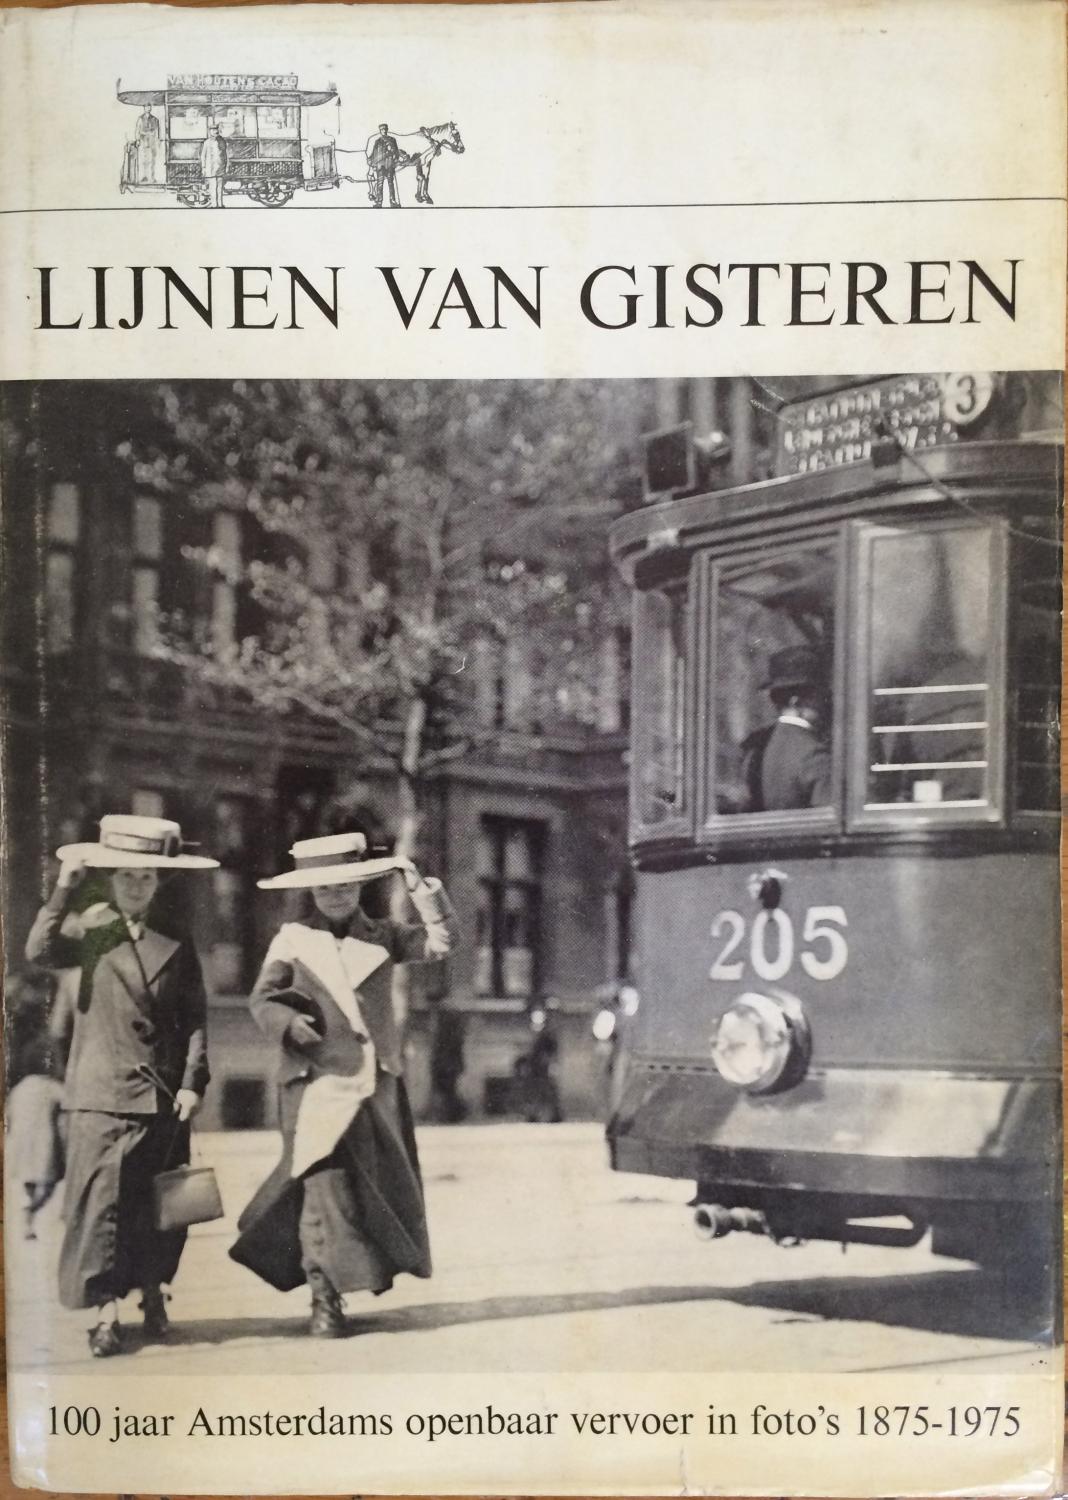 Lijnen van gisteren: 100 jaar Amsterdams openbaar vervoer in foto's 1875-1975 - Duparc, H. J. A